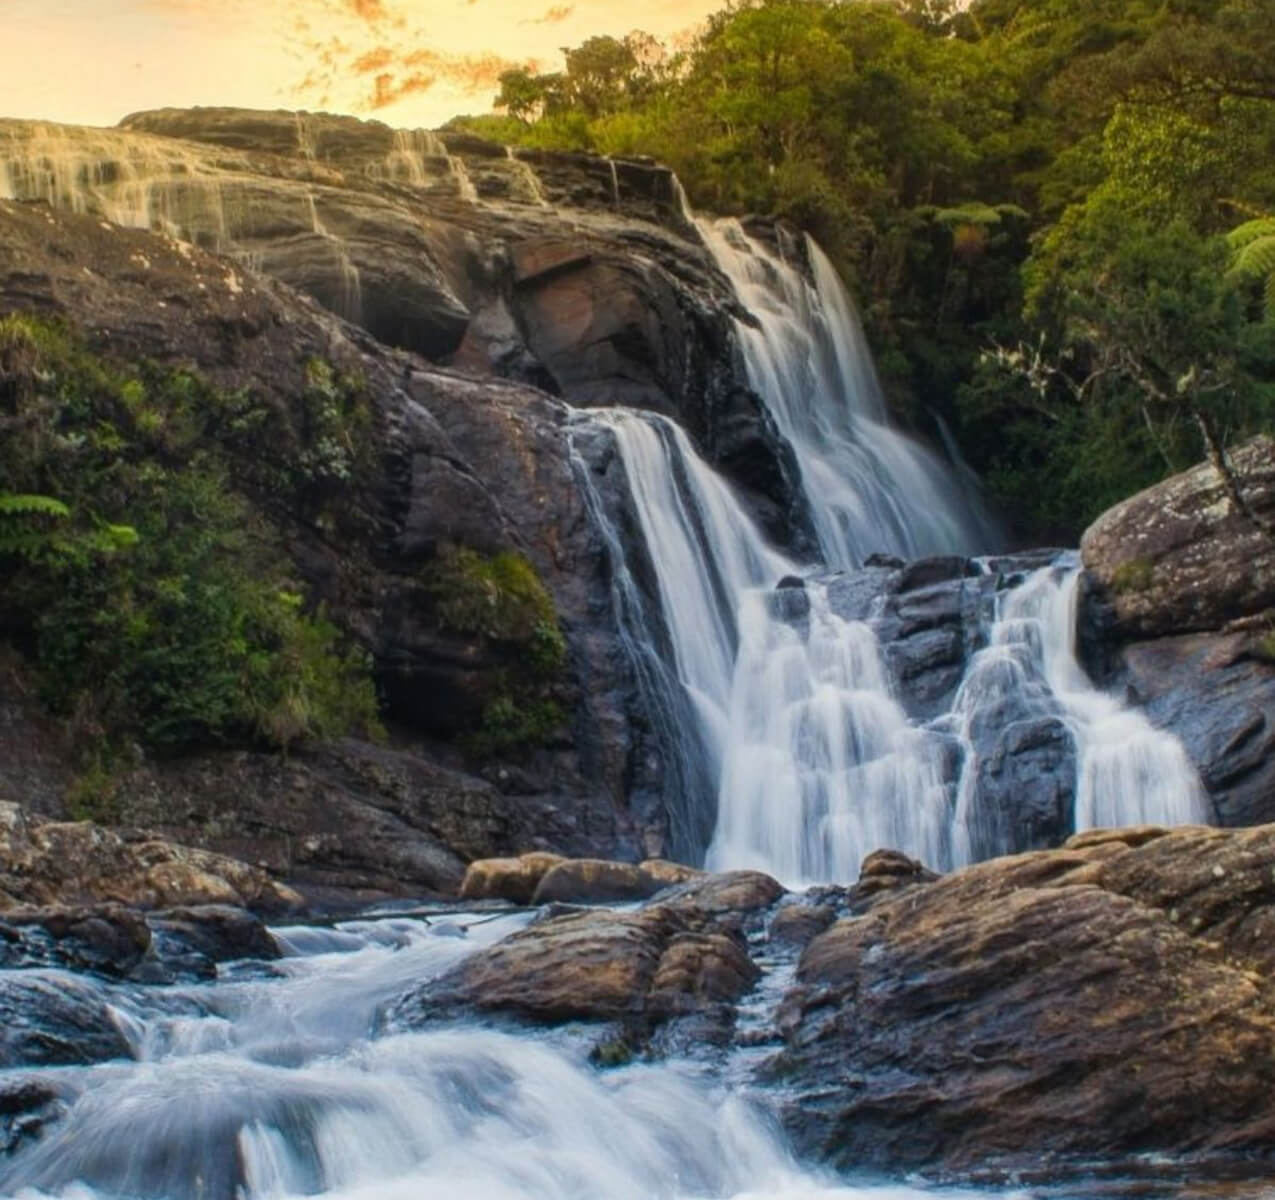 Waterfalls in Sri Lanka